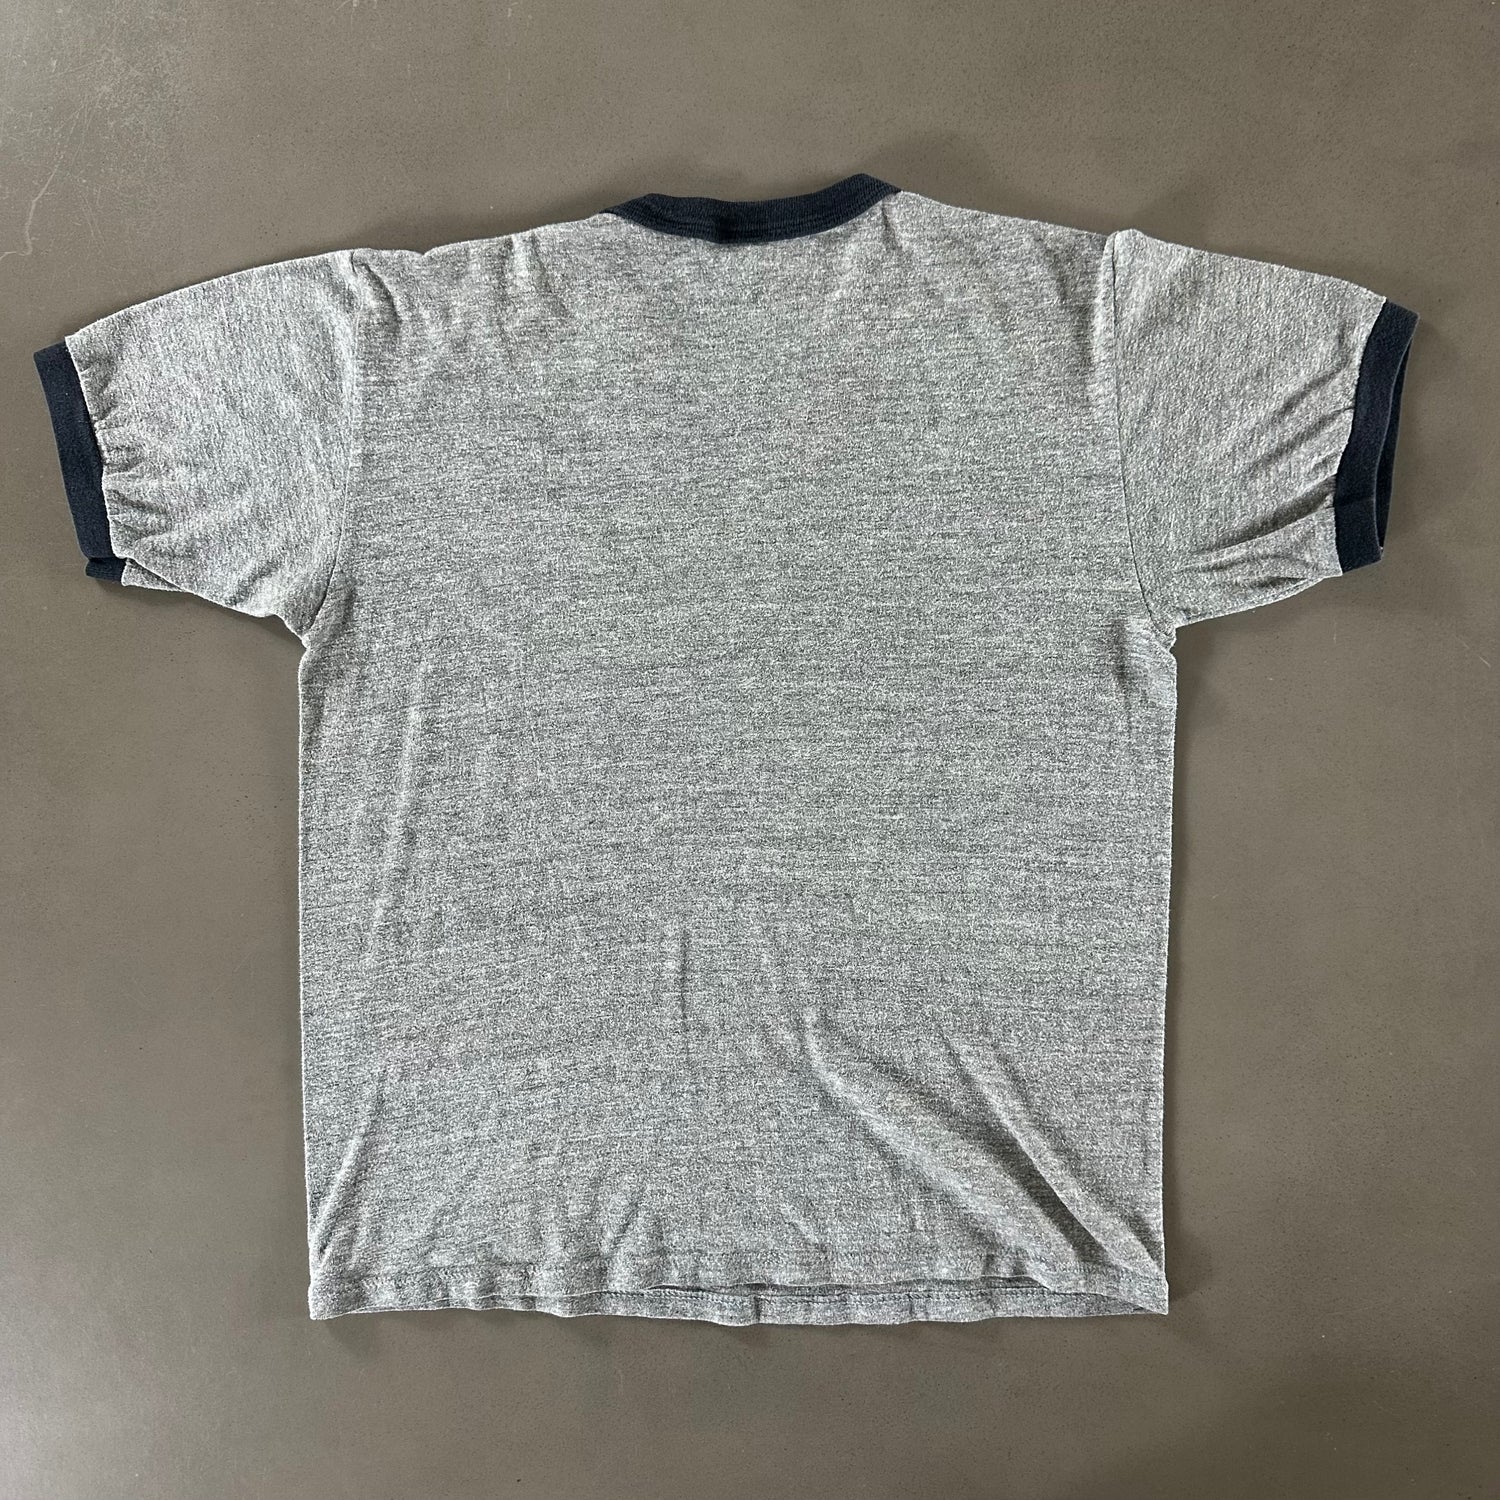 Vintage 1980s University of Alabama T-shirt size Medium